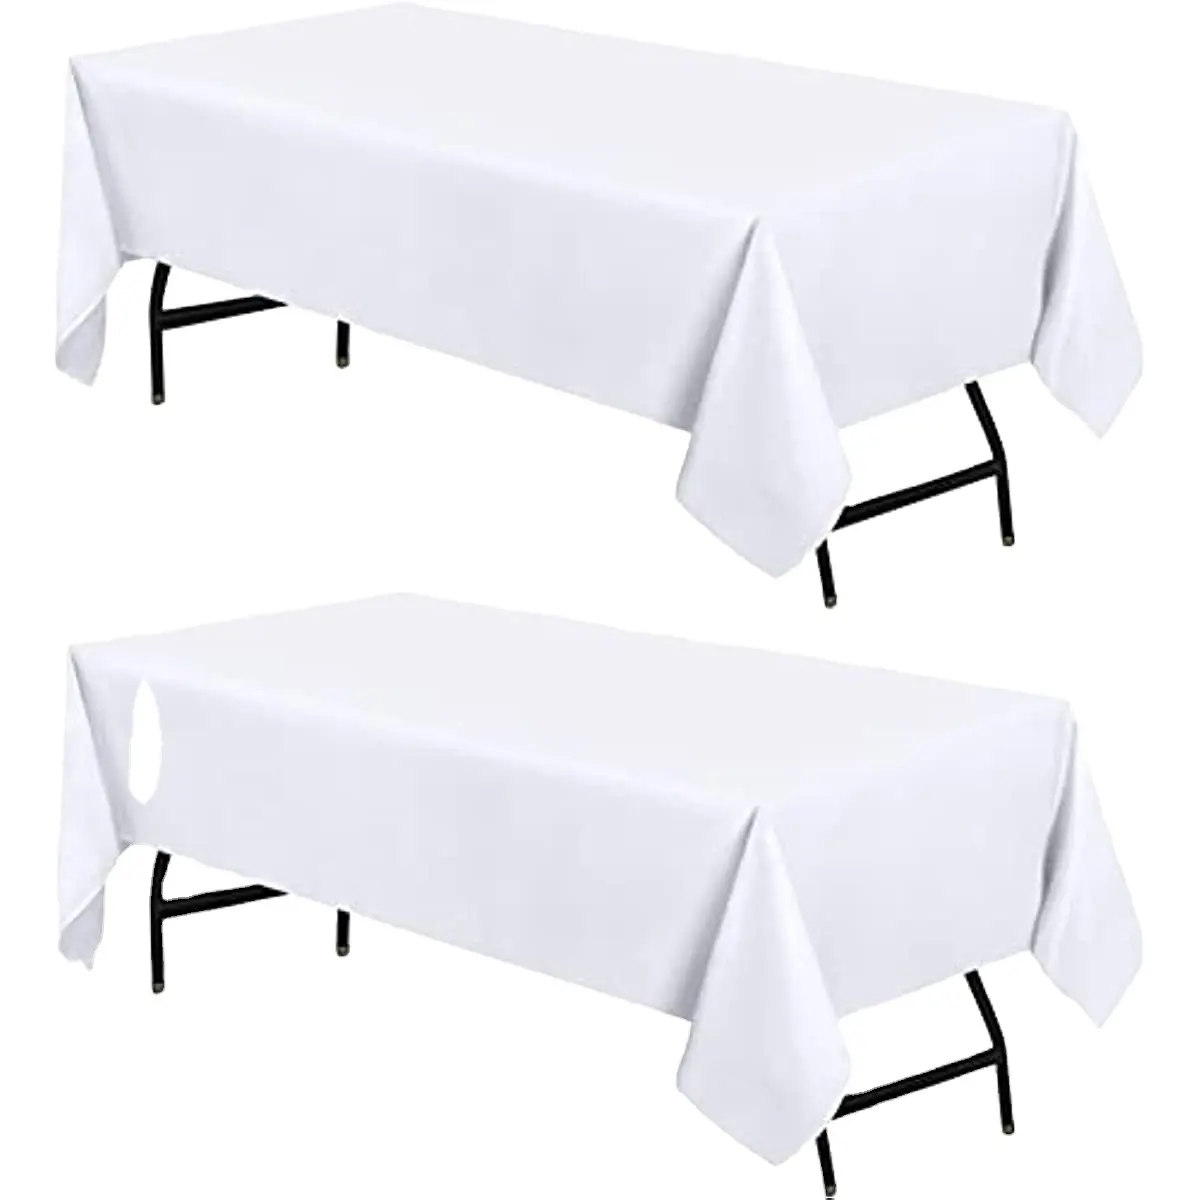 Nappes rectangulaires en polyester 60x84, haut de gamme, pour fête de mariage, banquet